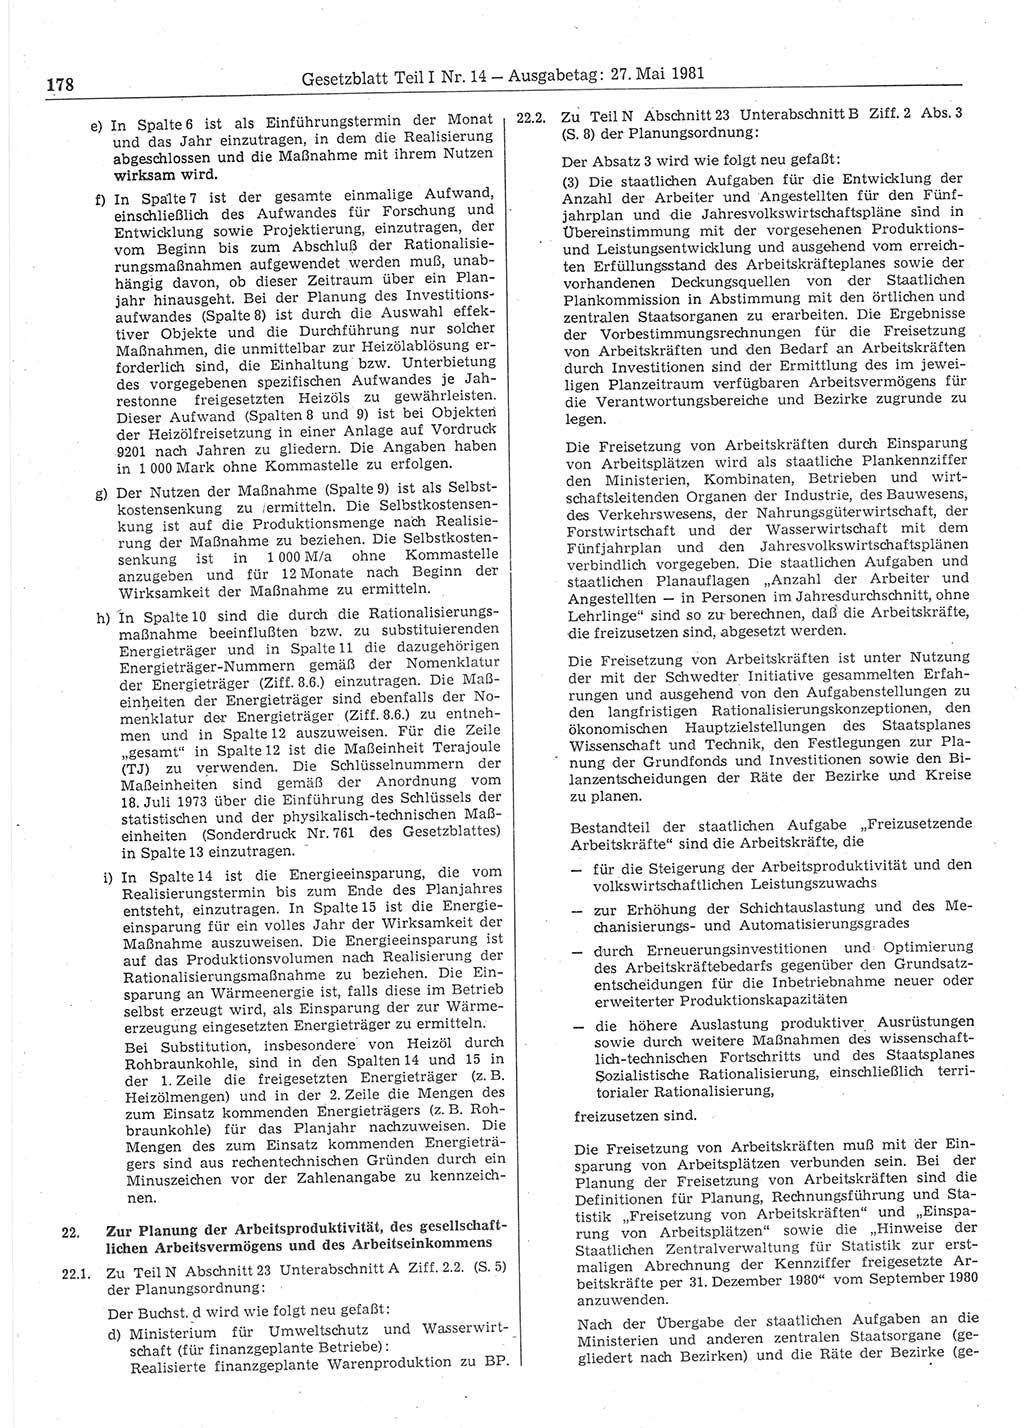 Gesetzblatt (GBl.) der Deutschen Demokratischen Republik (DDR) Teil Ⅰ 1981, Seite 178 (GBl. DDR Ⅰ 1981, S. 178)